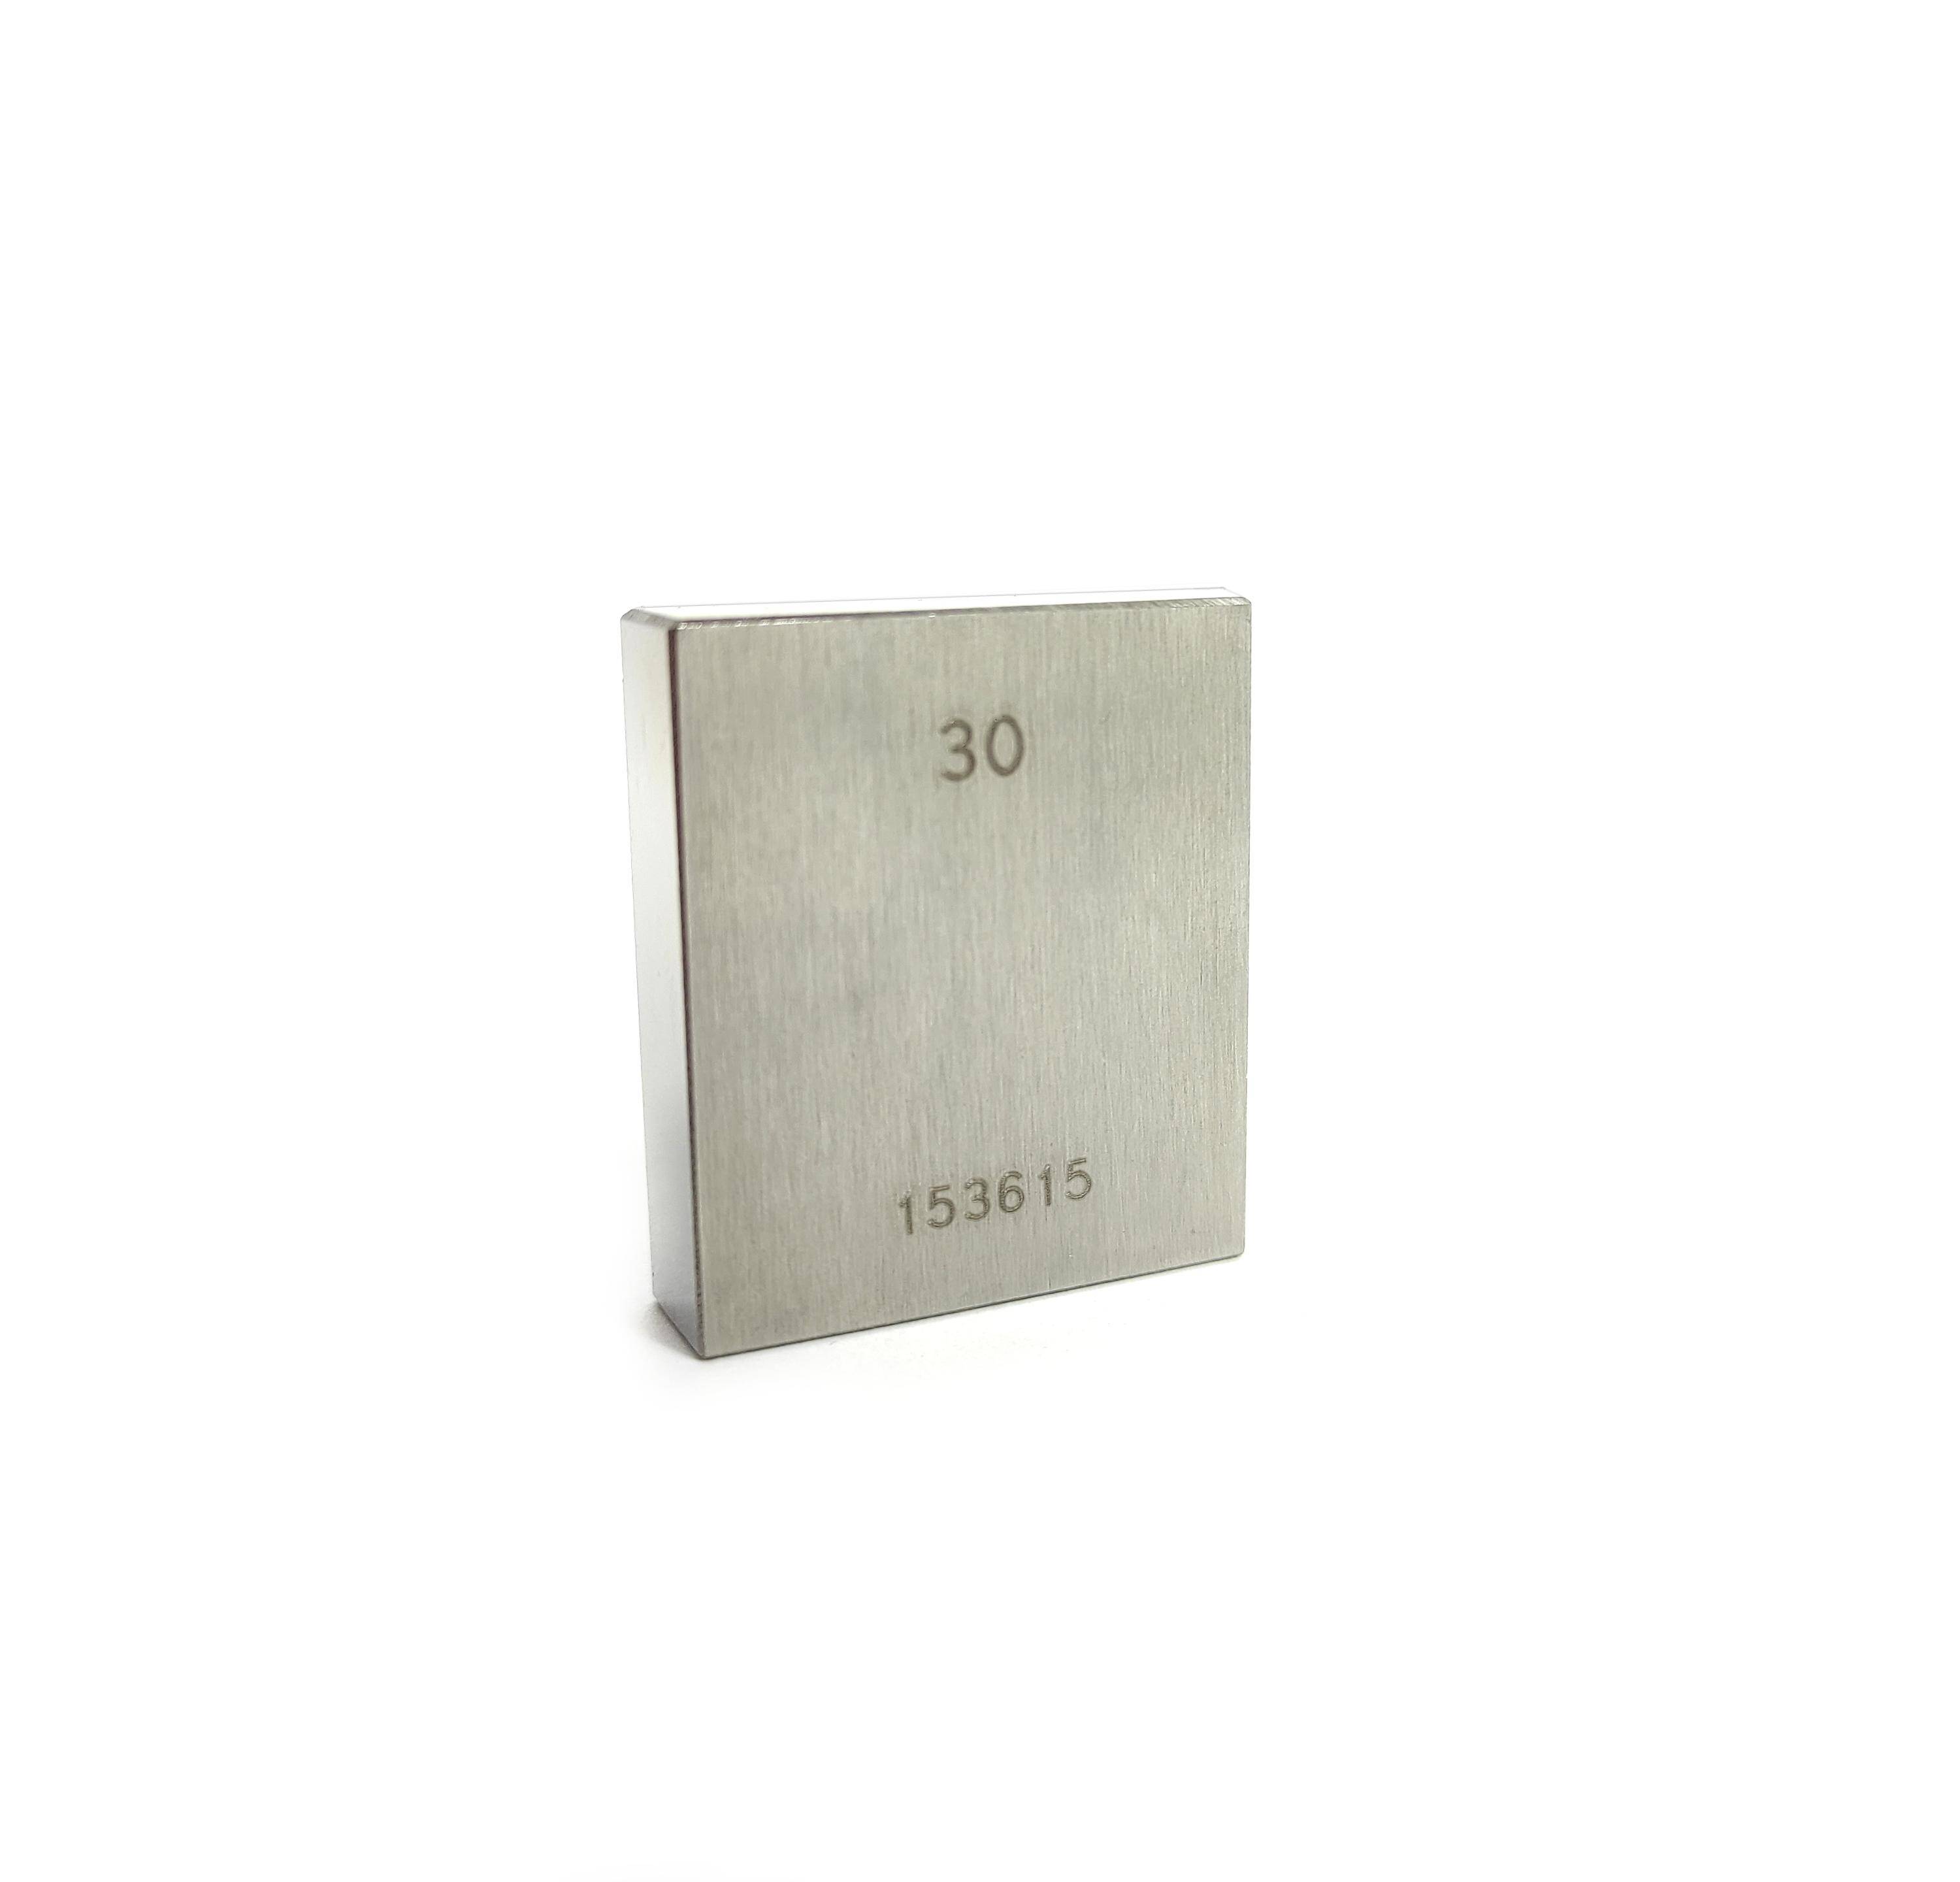 SHUT płytka wzorcowa stalowa 30.00 mm ISO 3650/0 klasa 0 908.057